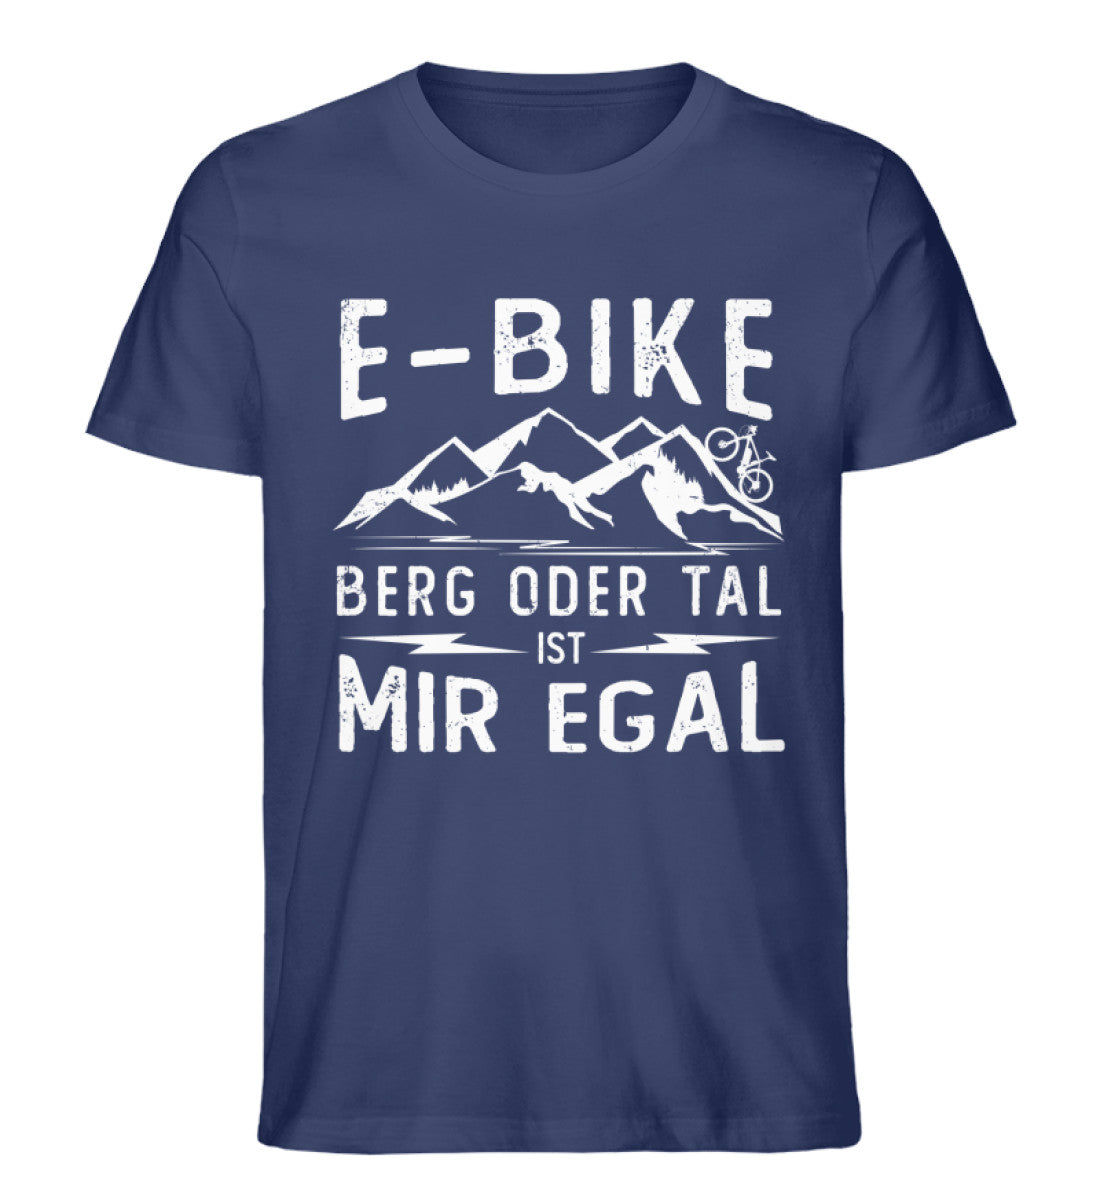 E-Bike - Berg oder Tal ist mir egal - Herren Organic T-Shirt e-bike Navyblau